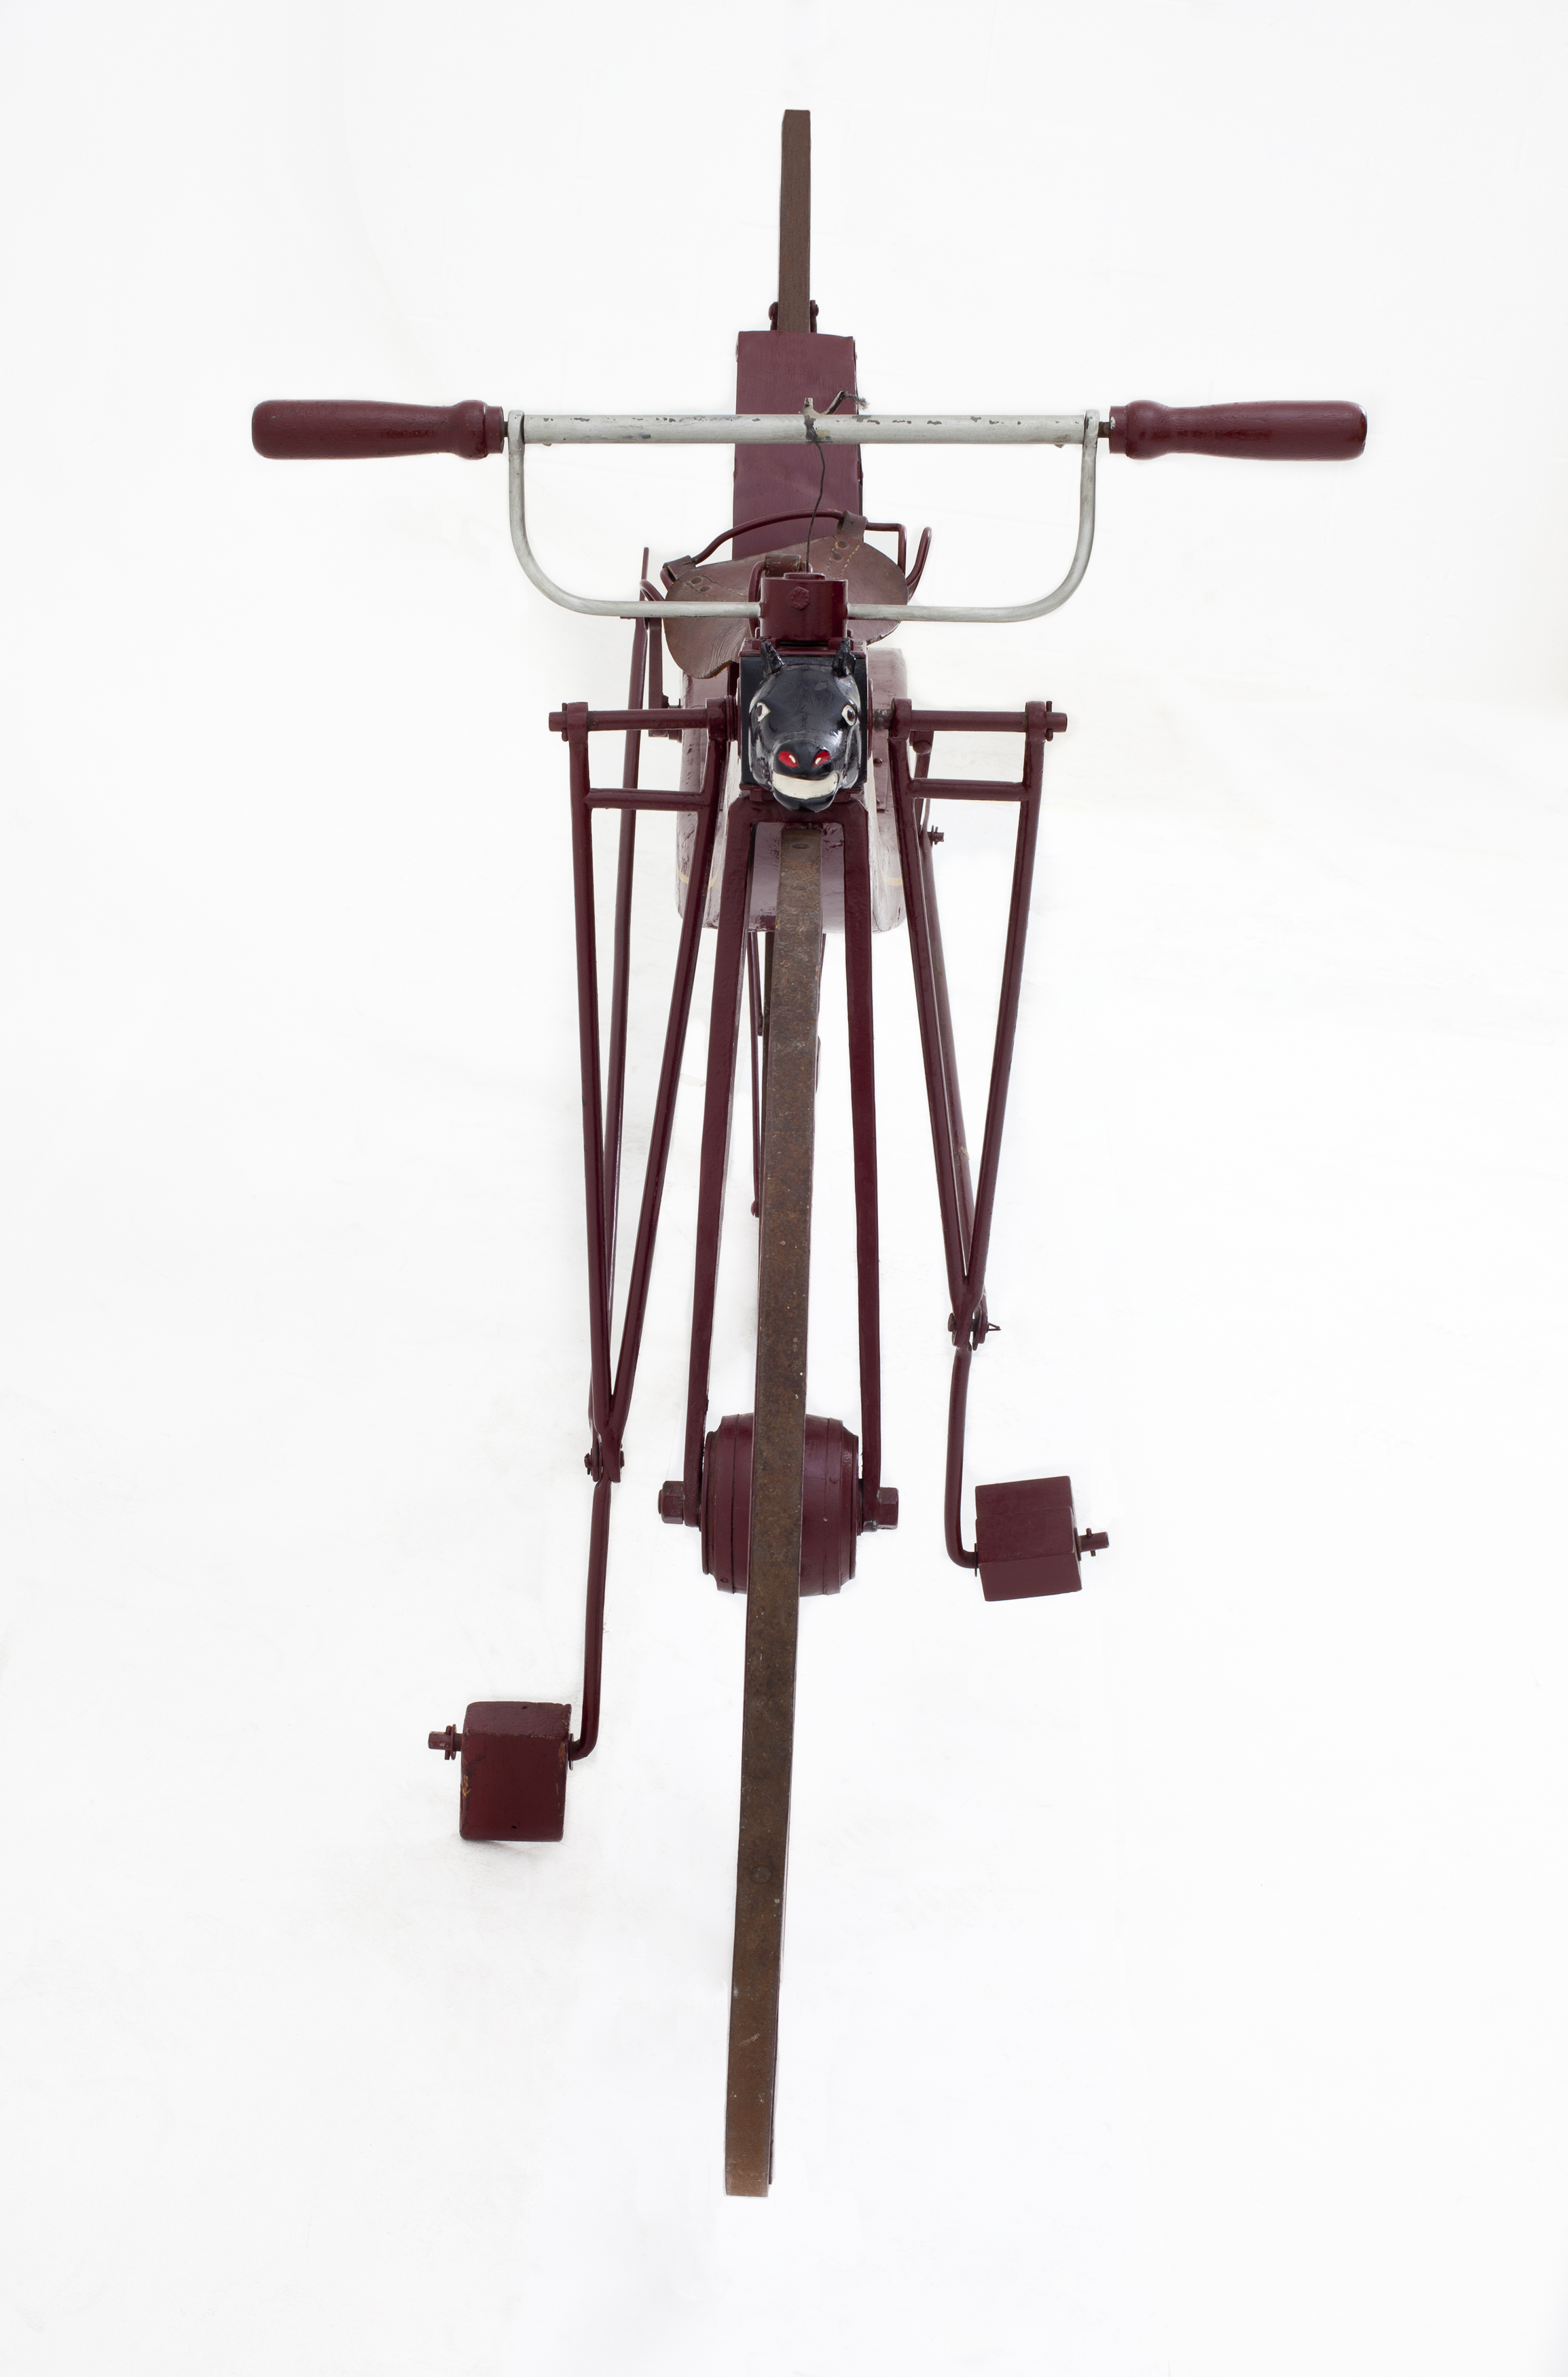 Reproduction of 1839 Macmillan bicycle